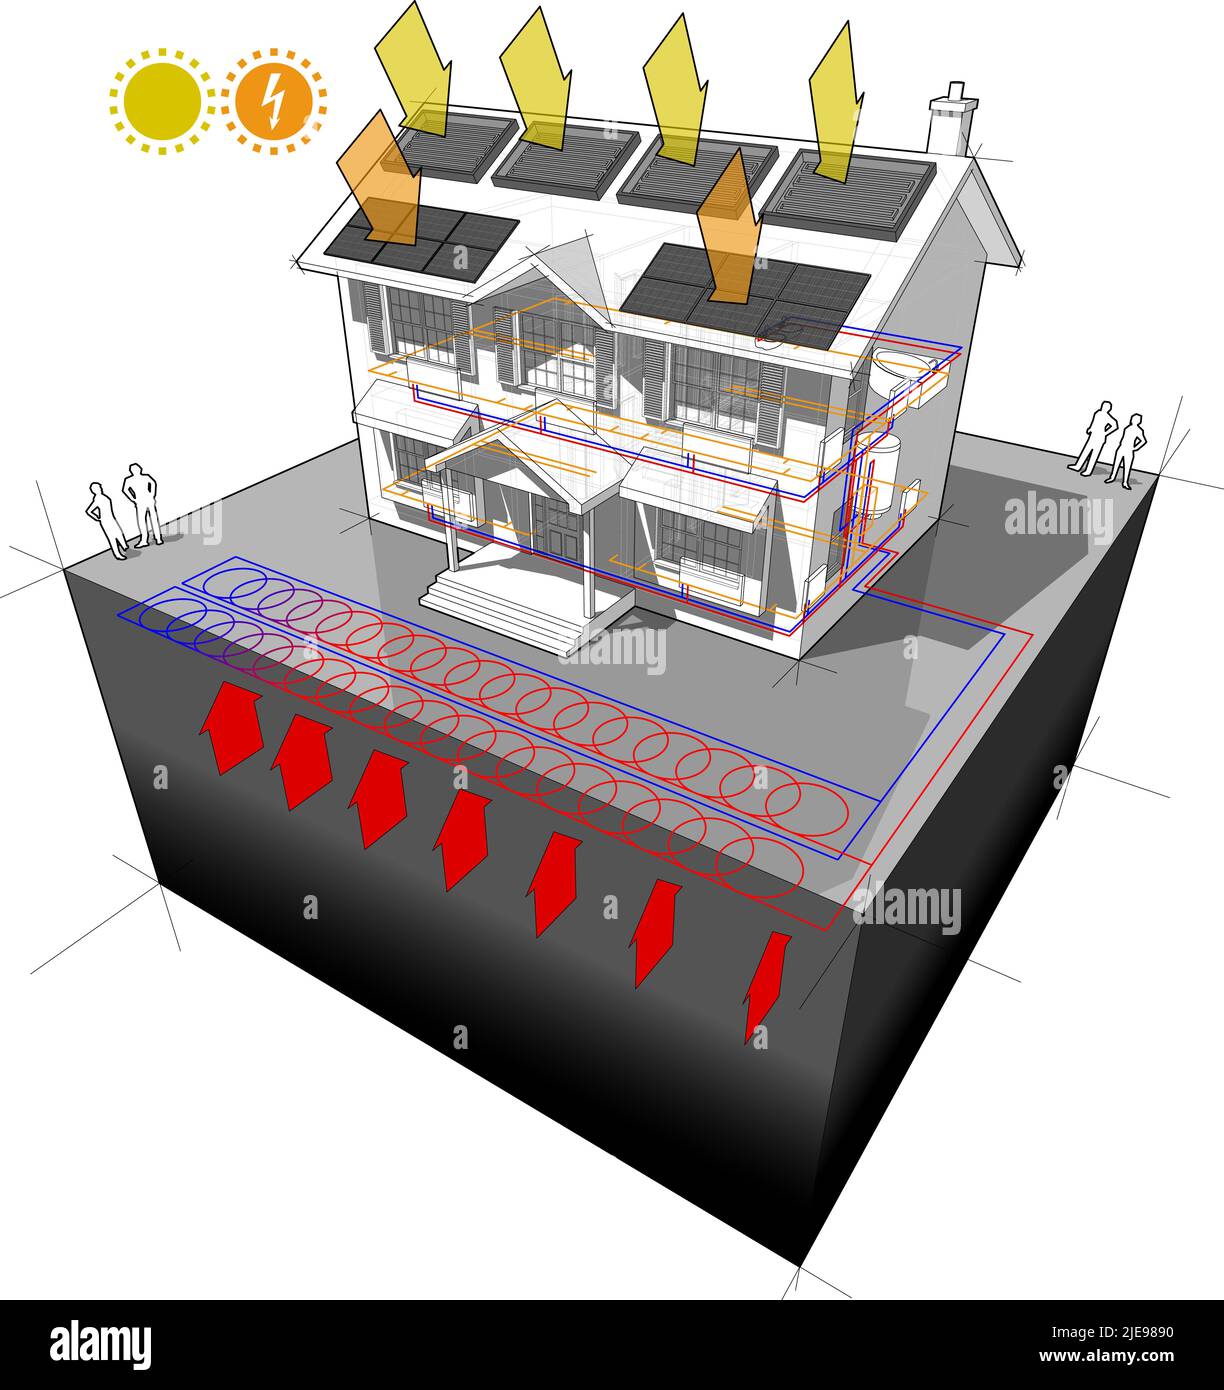 casa con pompa di calore a terra planare come fonte di energia per riscaldamento e radiatori e pannelli fotovoltaici e pannelli solari Foto Stock